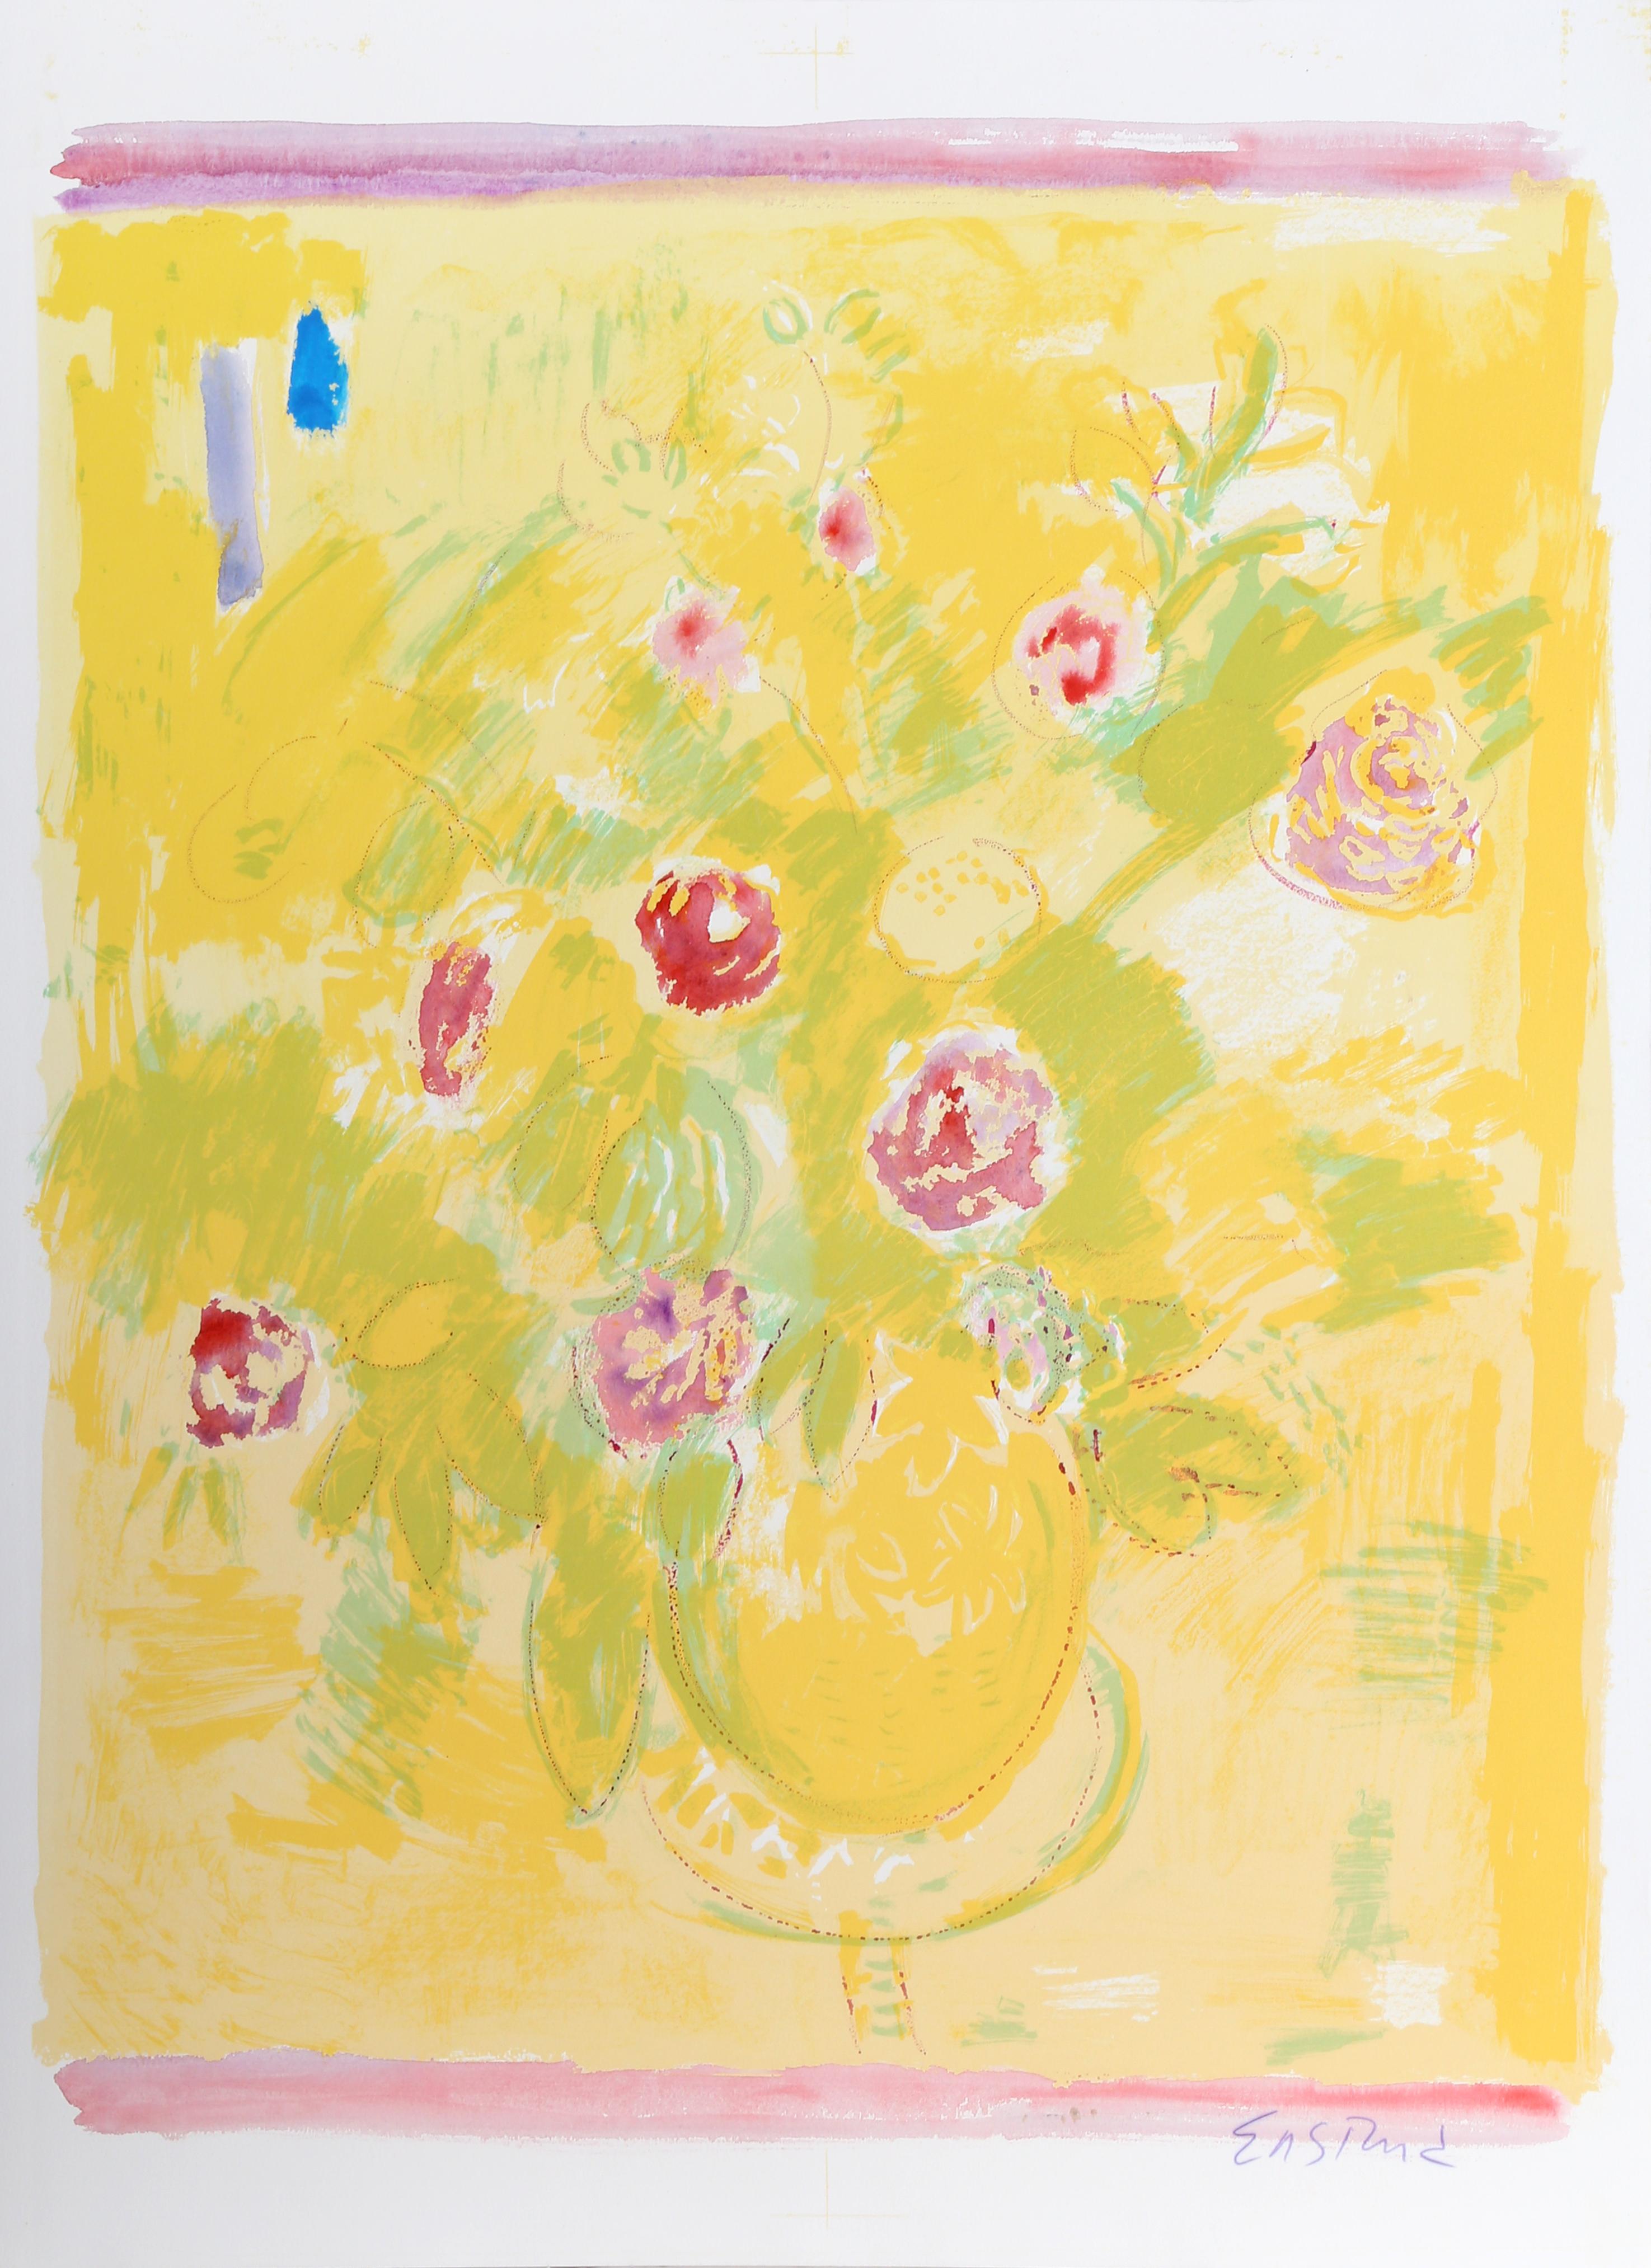 Lithographie unique peinte à la main d'un bouquet de fleurs coloré par Wayne Ensrud, américain (1934).
Dimanche tranquille (jaune)
Wayne Ensrud, américain (1934)
Date : 1980
Lithographie peinte à la main, signée au crayon
Taille : 35 in. x 26 in.